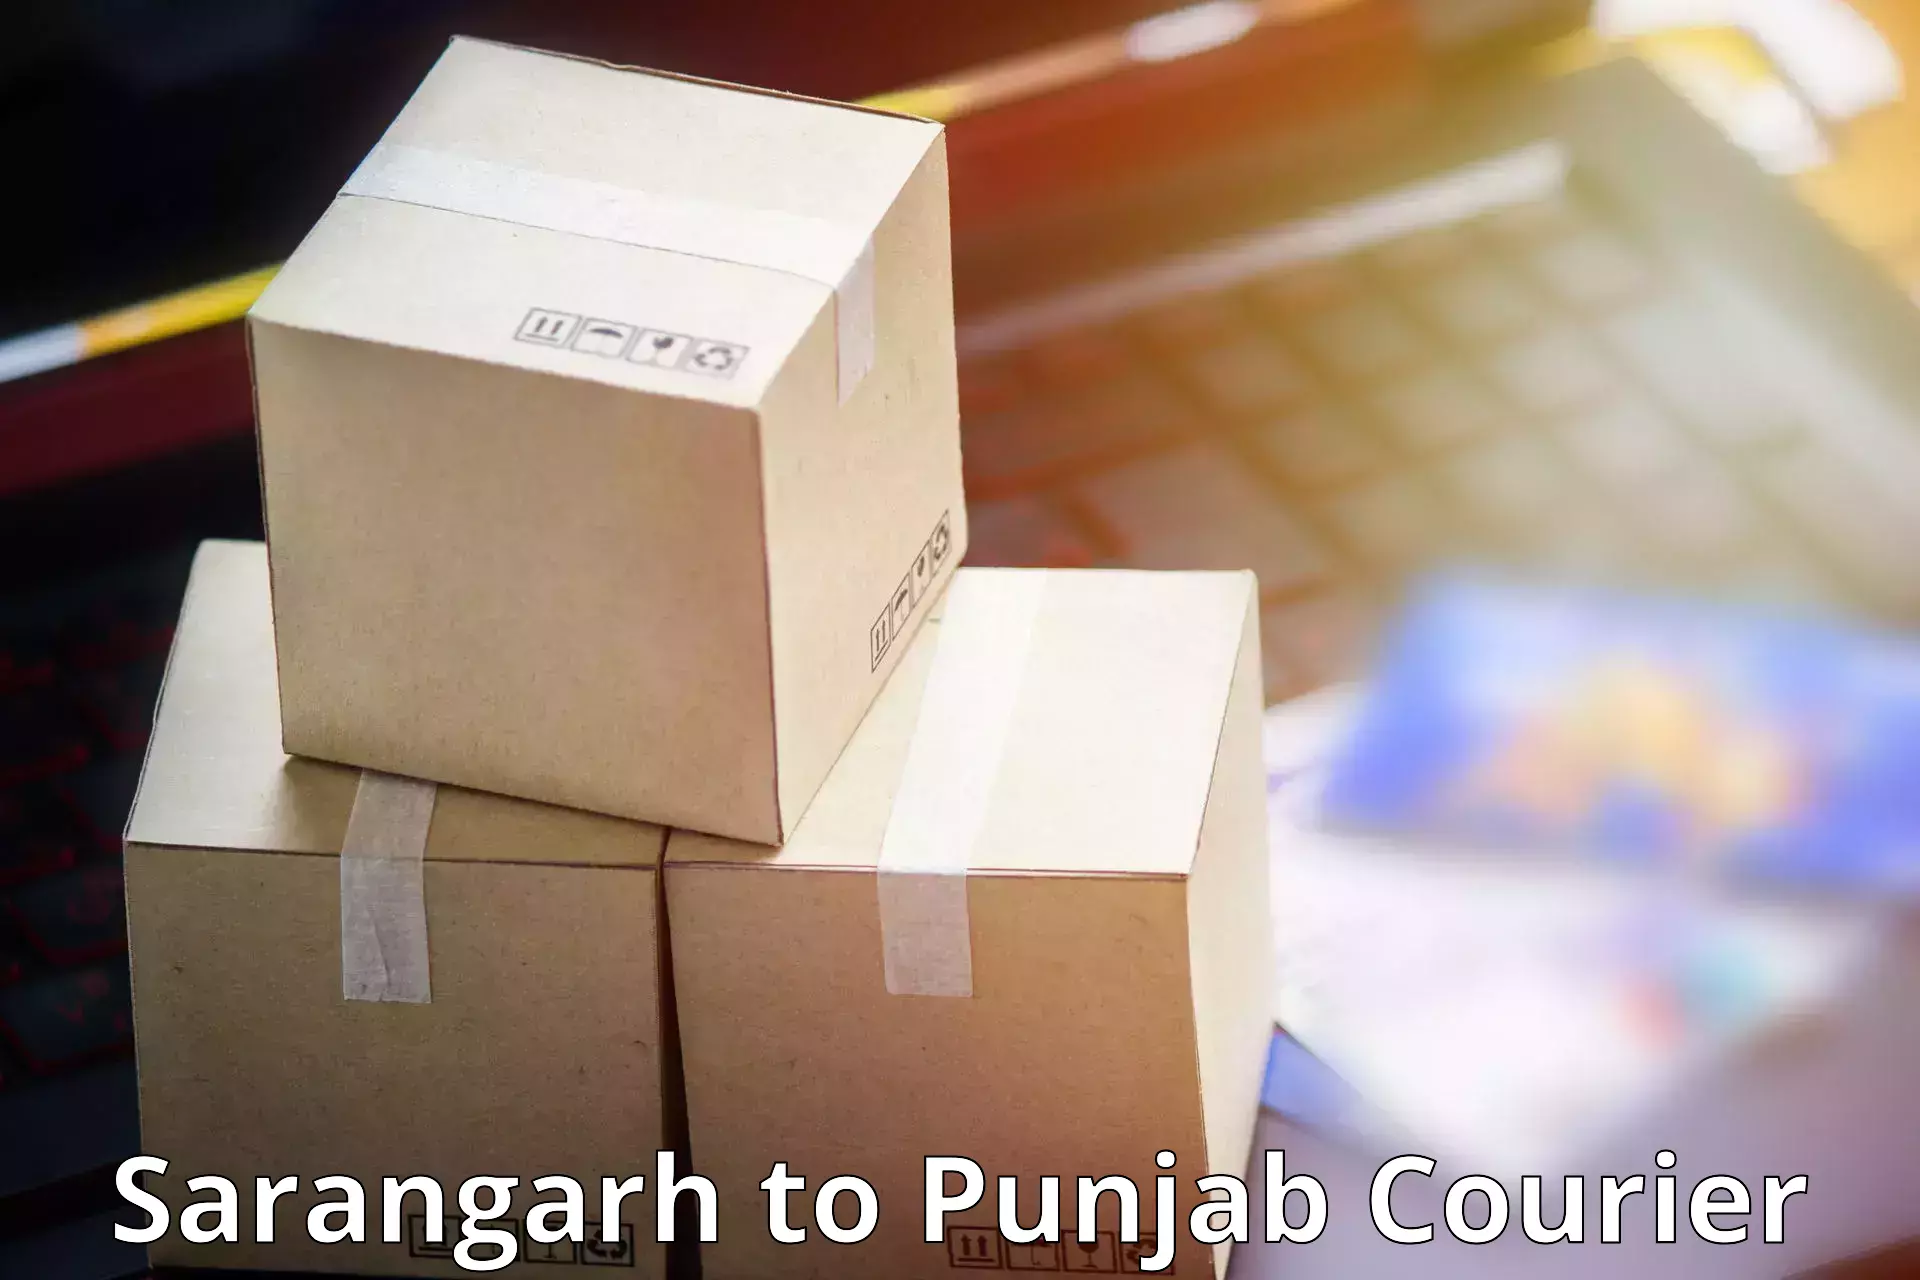 Advanced shipping technology Sarangarh to Punjab